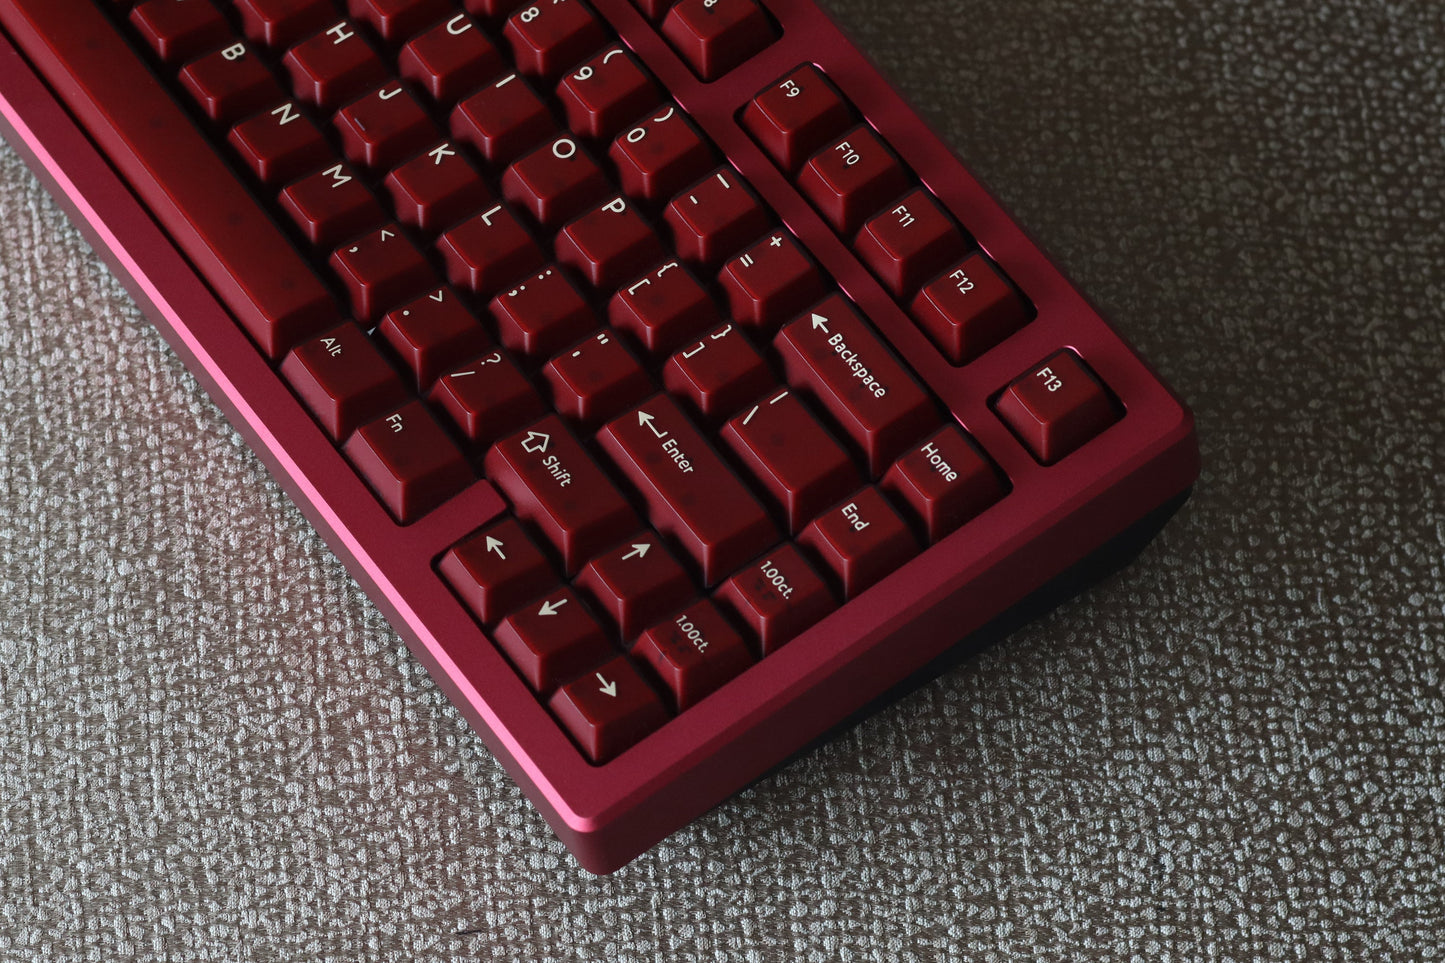 
                  
                    (Group Buy) Jris75 Keyboard Kit - Wine Red & Black (PVD)
                  
                